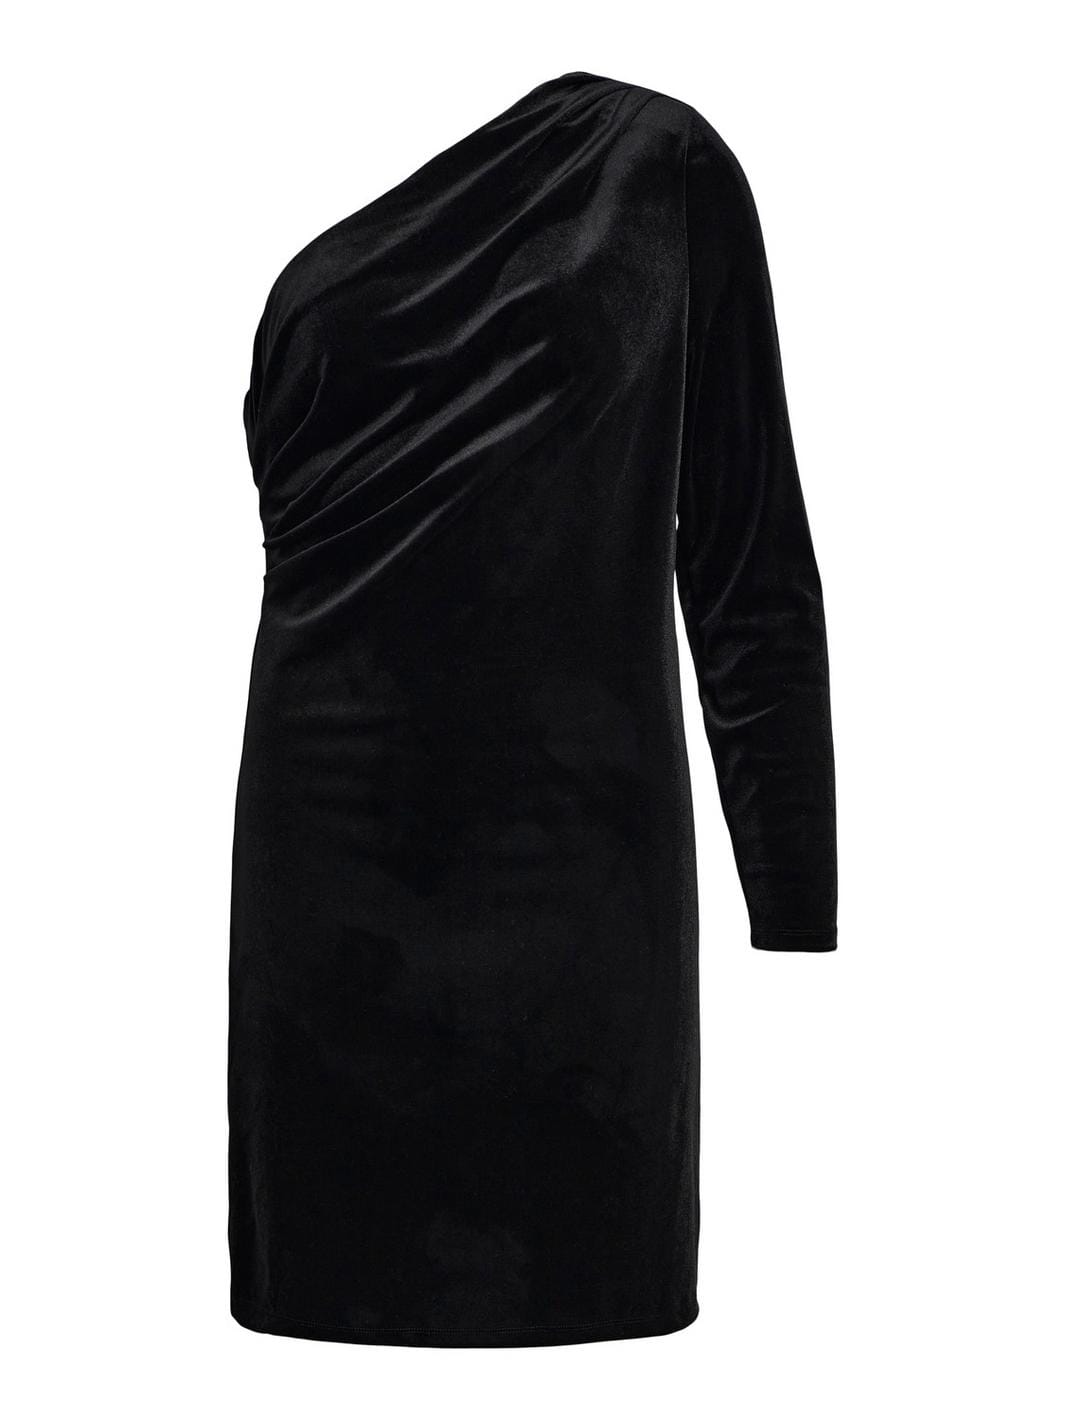 Object - Objbianca One Shoulder Short Dress 130 - 4434503 Black